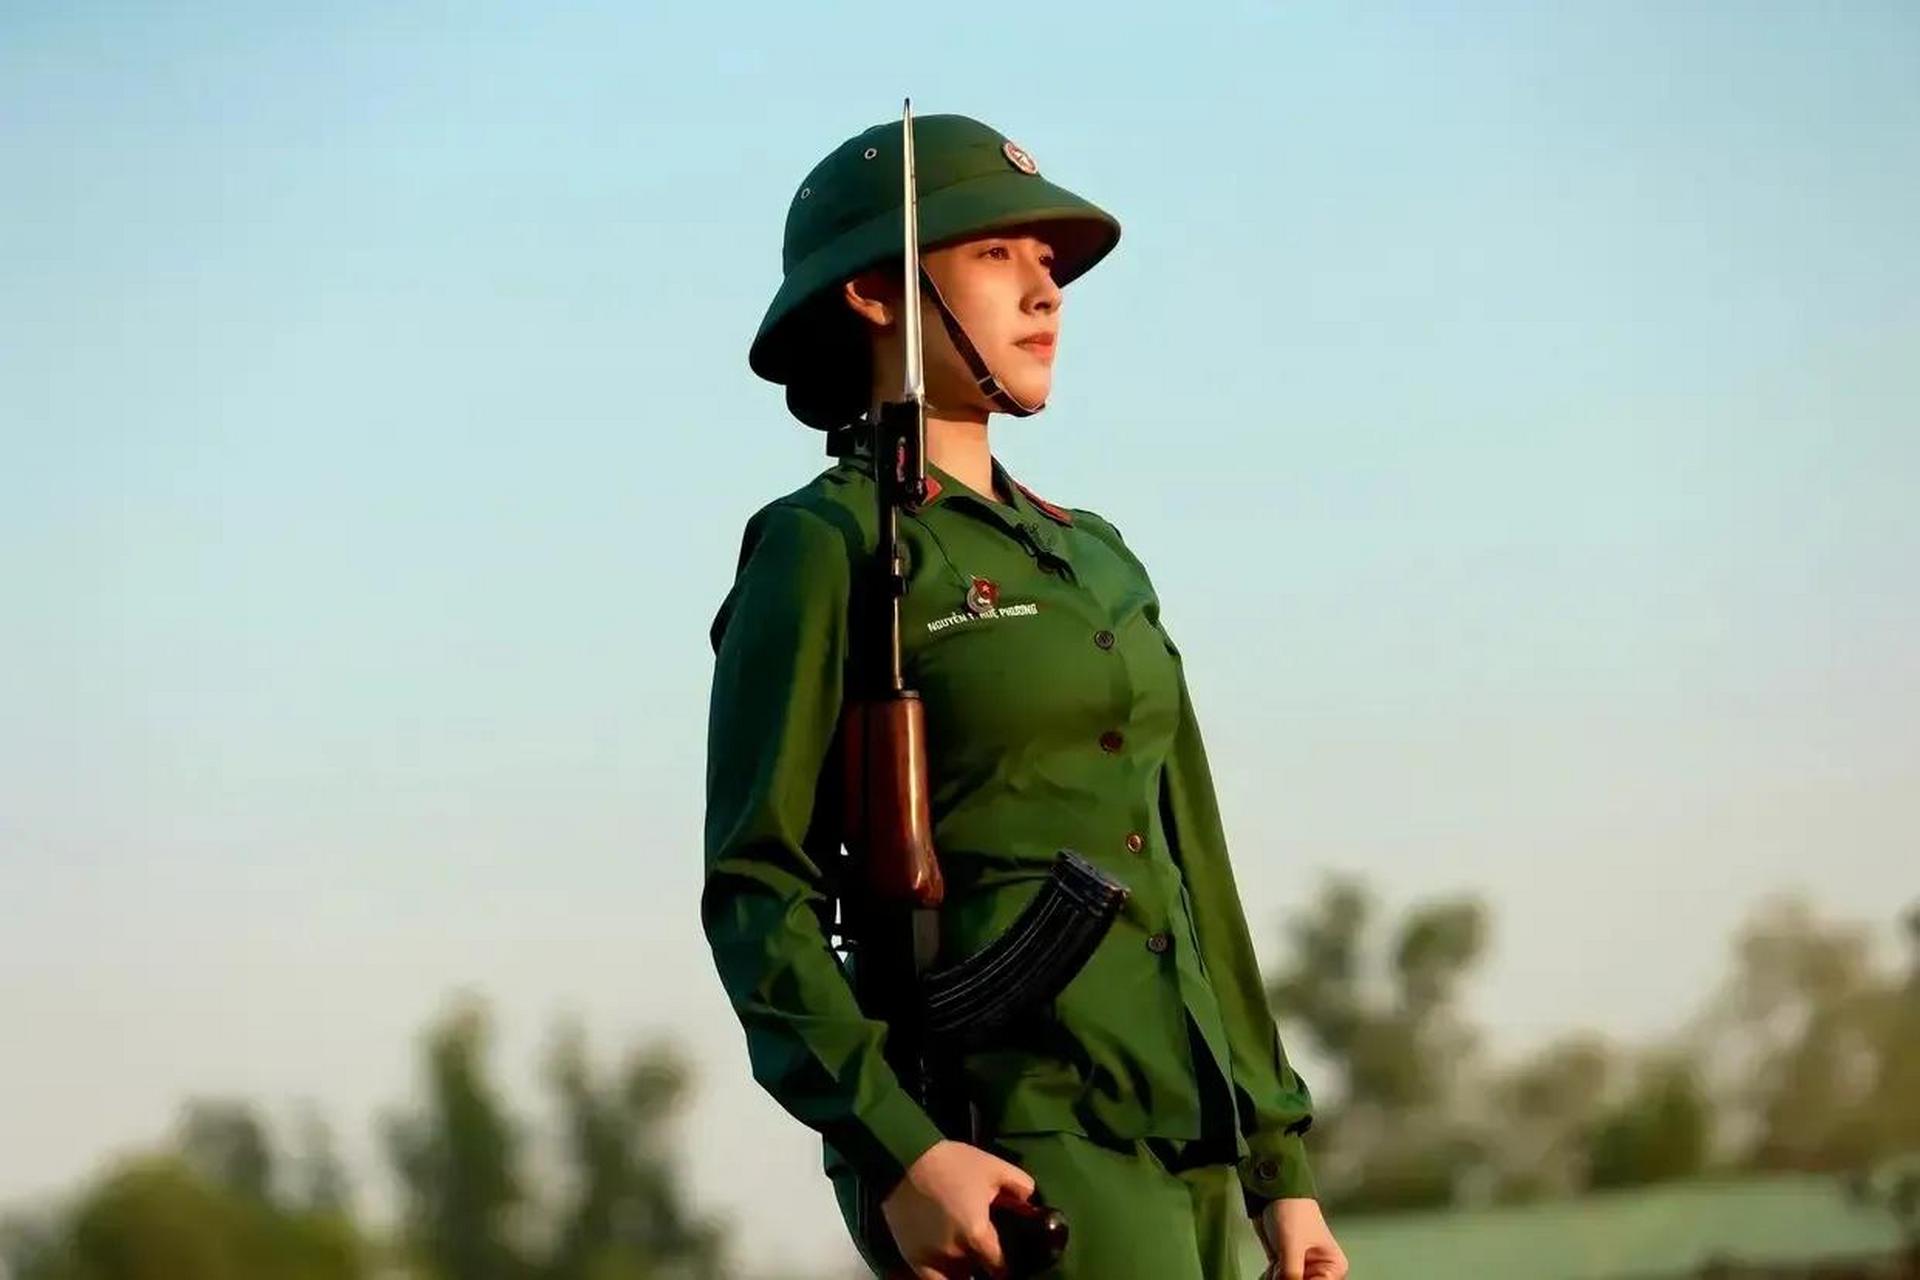 近日,网络上流传着几张越南女兵的照片,引起了人们的热议